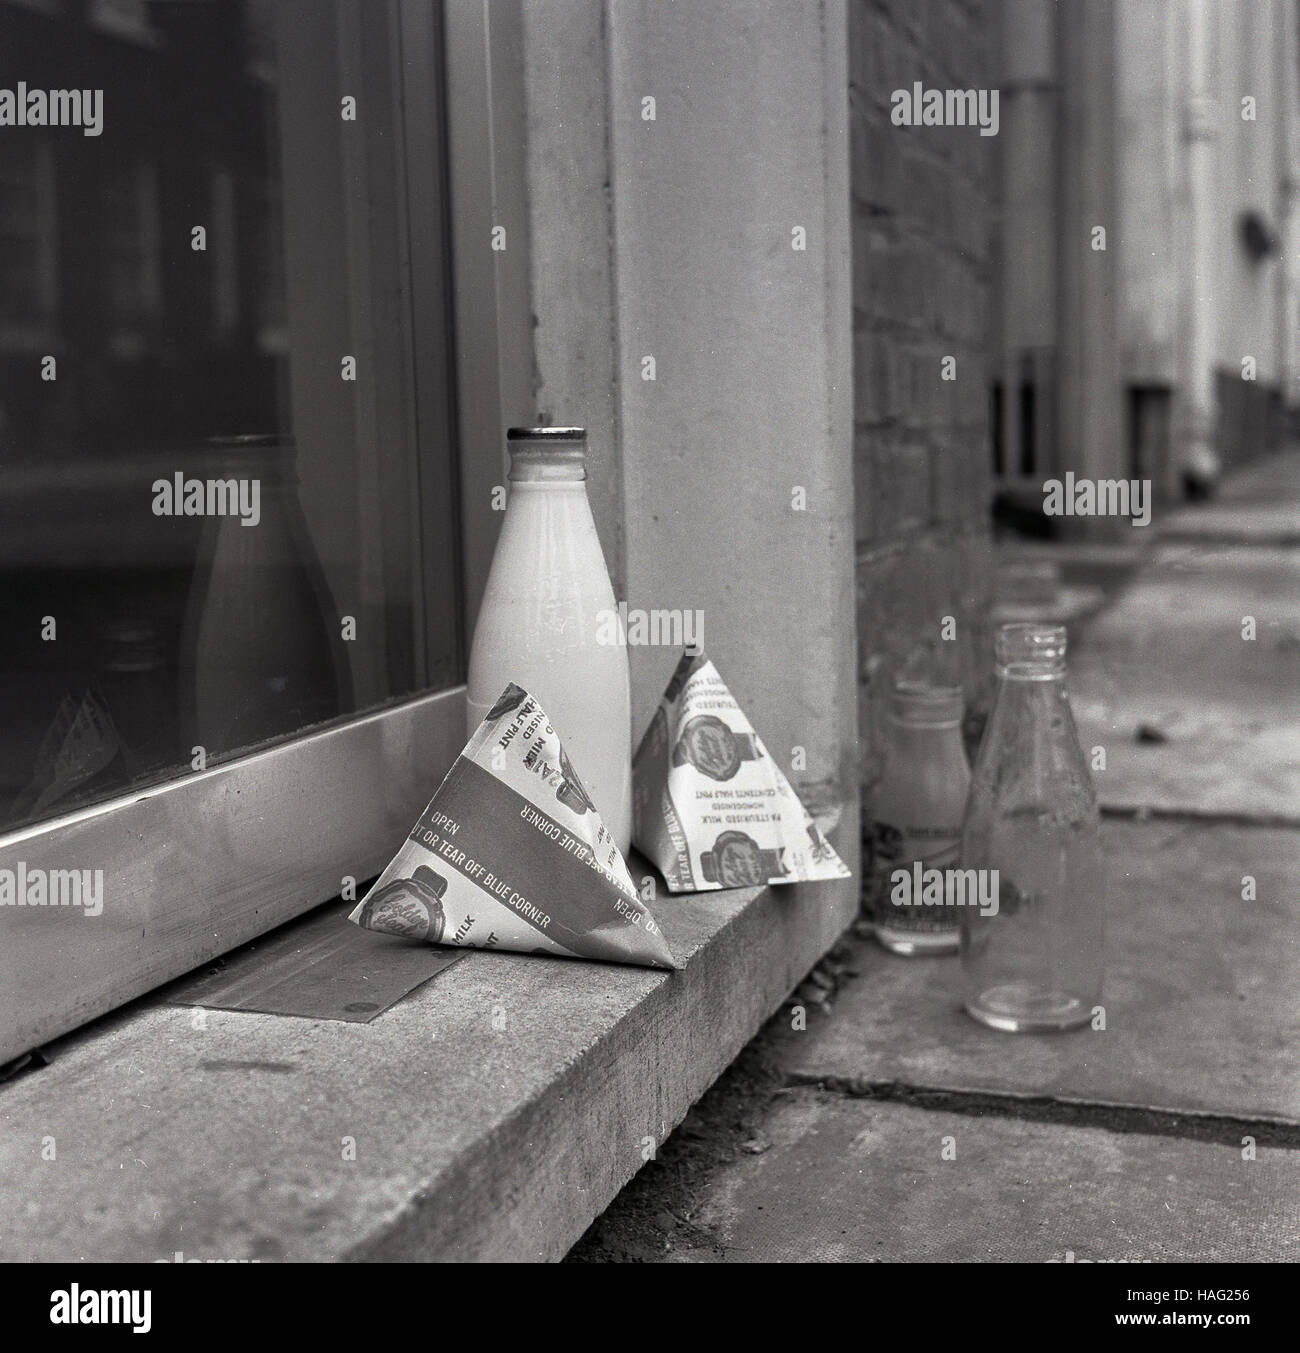 1965, historiques, une pinte de lait et bouteille de verre taille deux cartons de lait s'asseoir sur une maison porte, avec une bouteille de lait en verre vide debout sur la chaussée. Banque D'Images